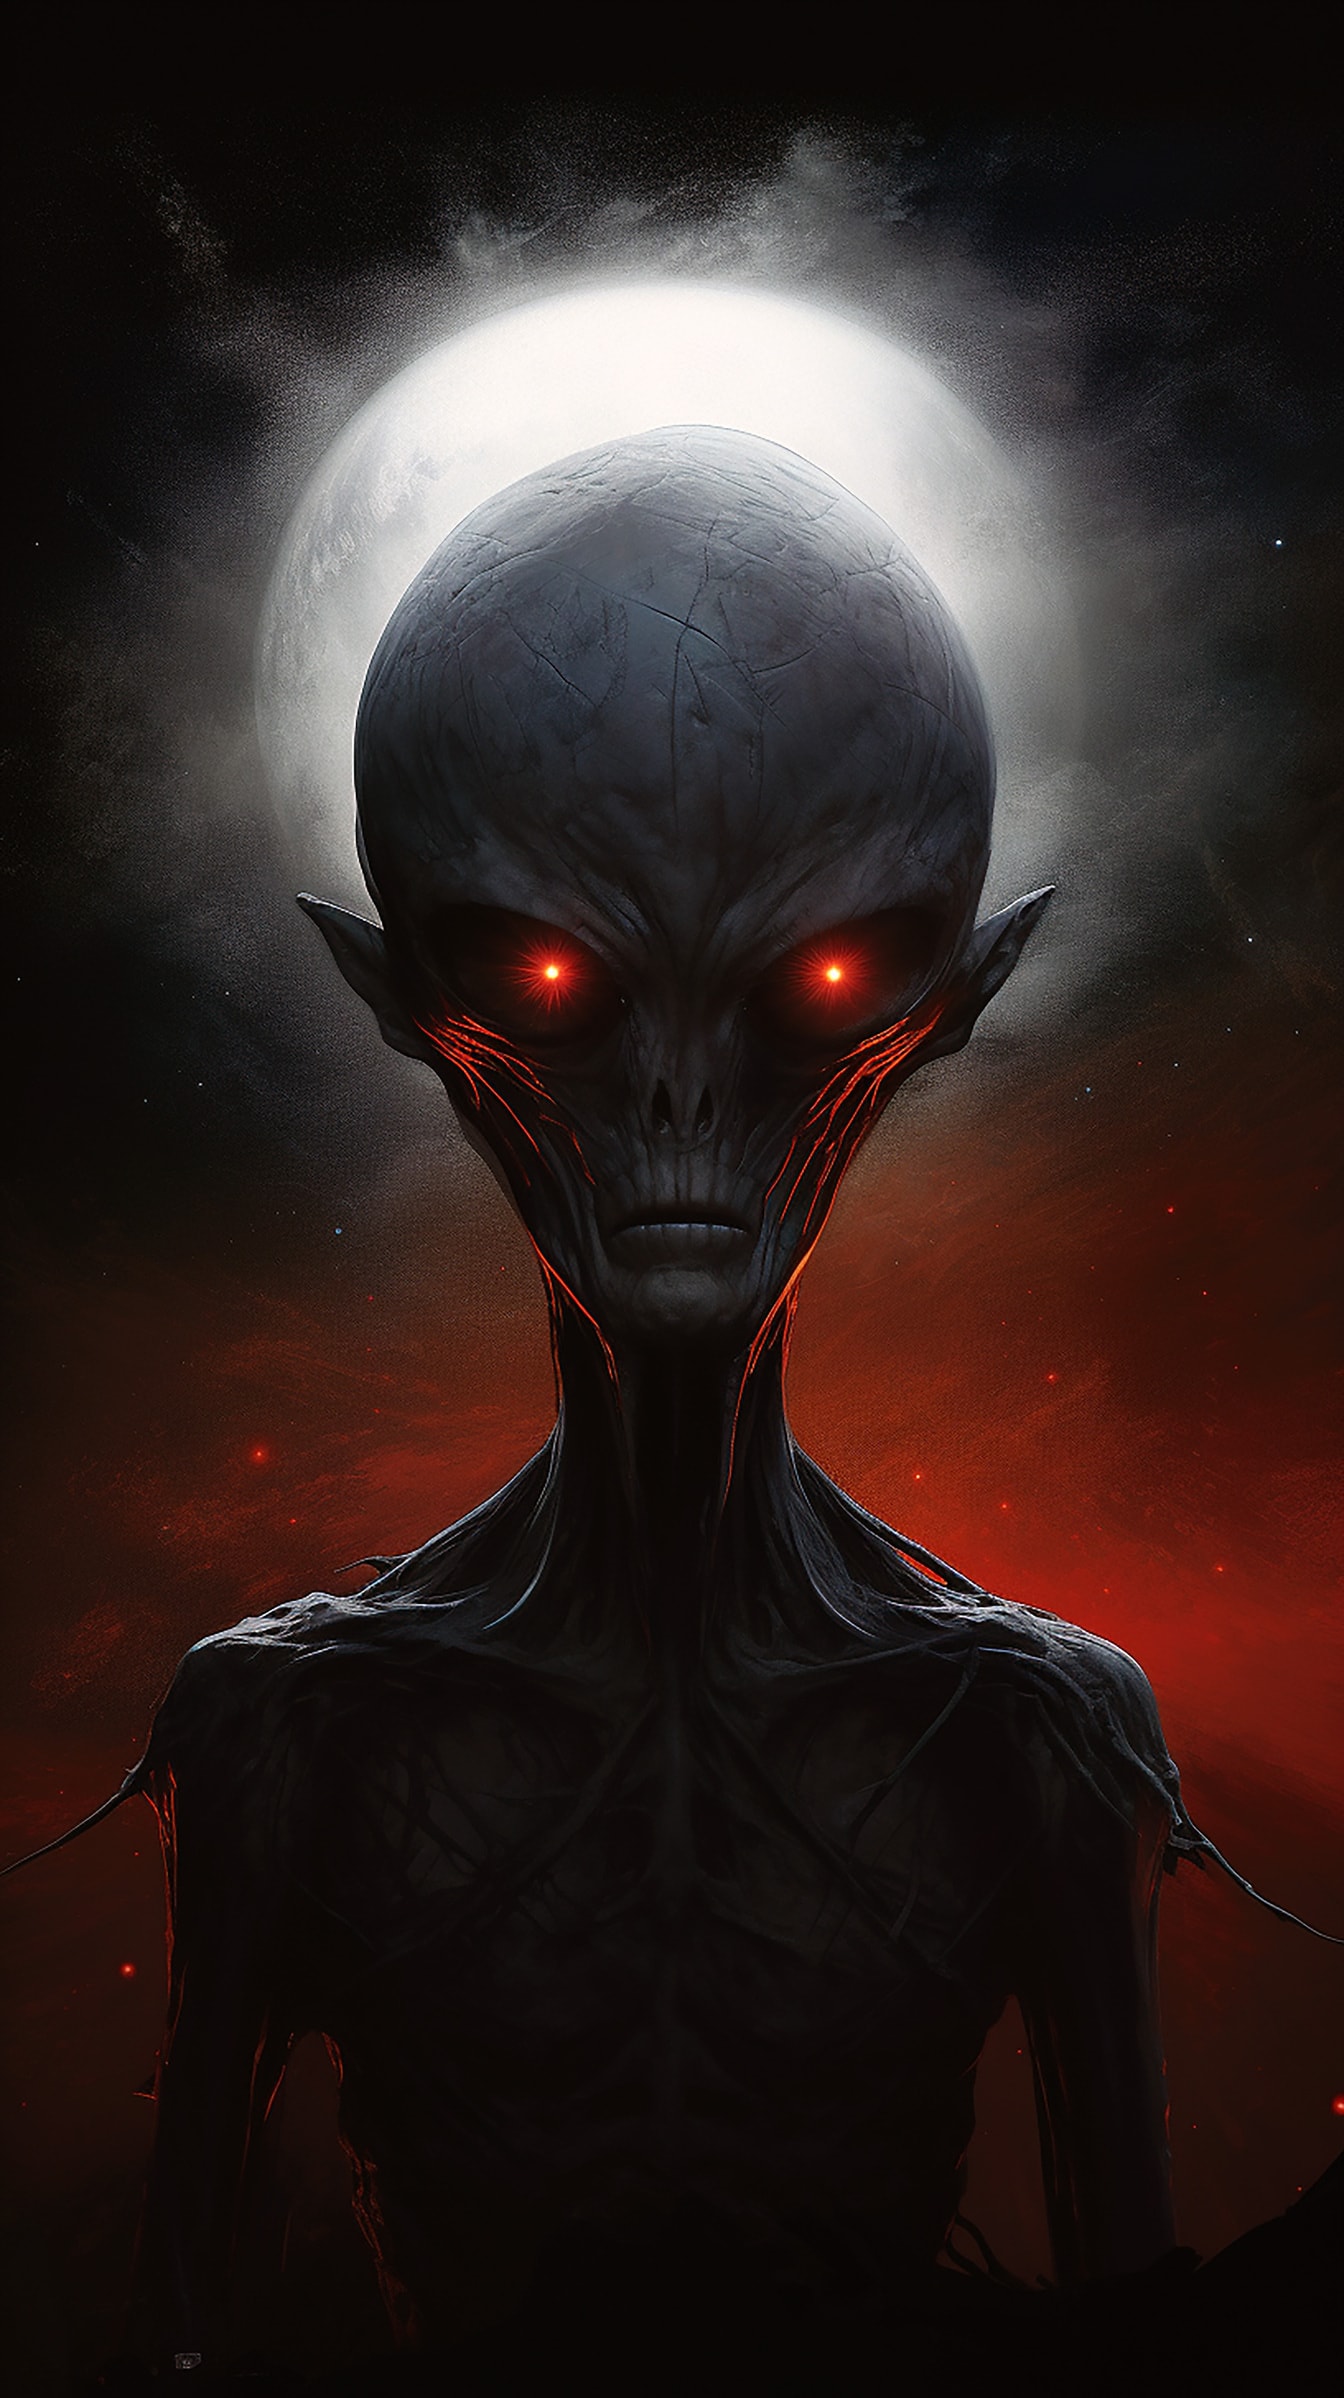 짙은 빨간 눈과 날씬한 몸매를 가진 외계인의 공포 초상화